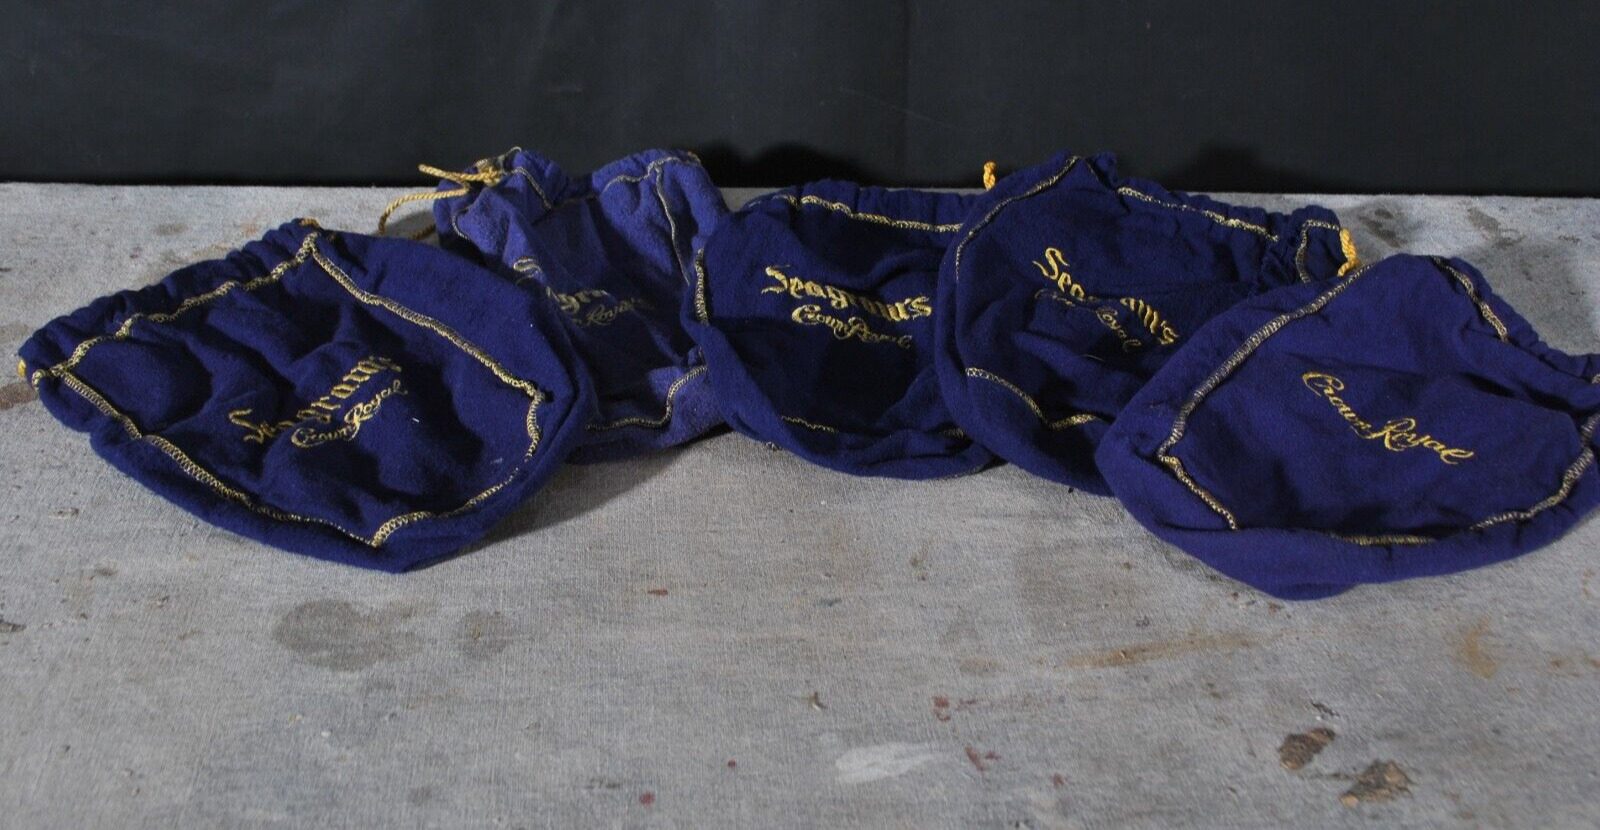 💥 Seagrams Crown Royal Bag Lot of 5 Purple & Gold - Vintage Bags